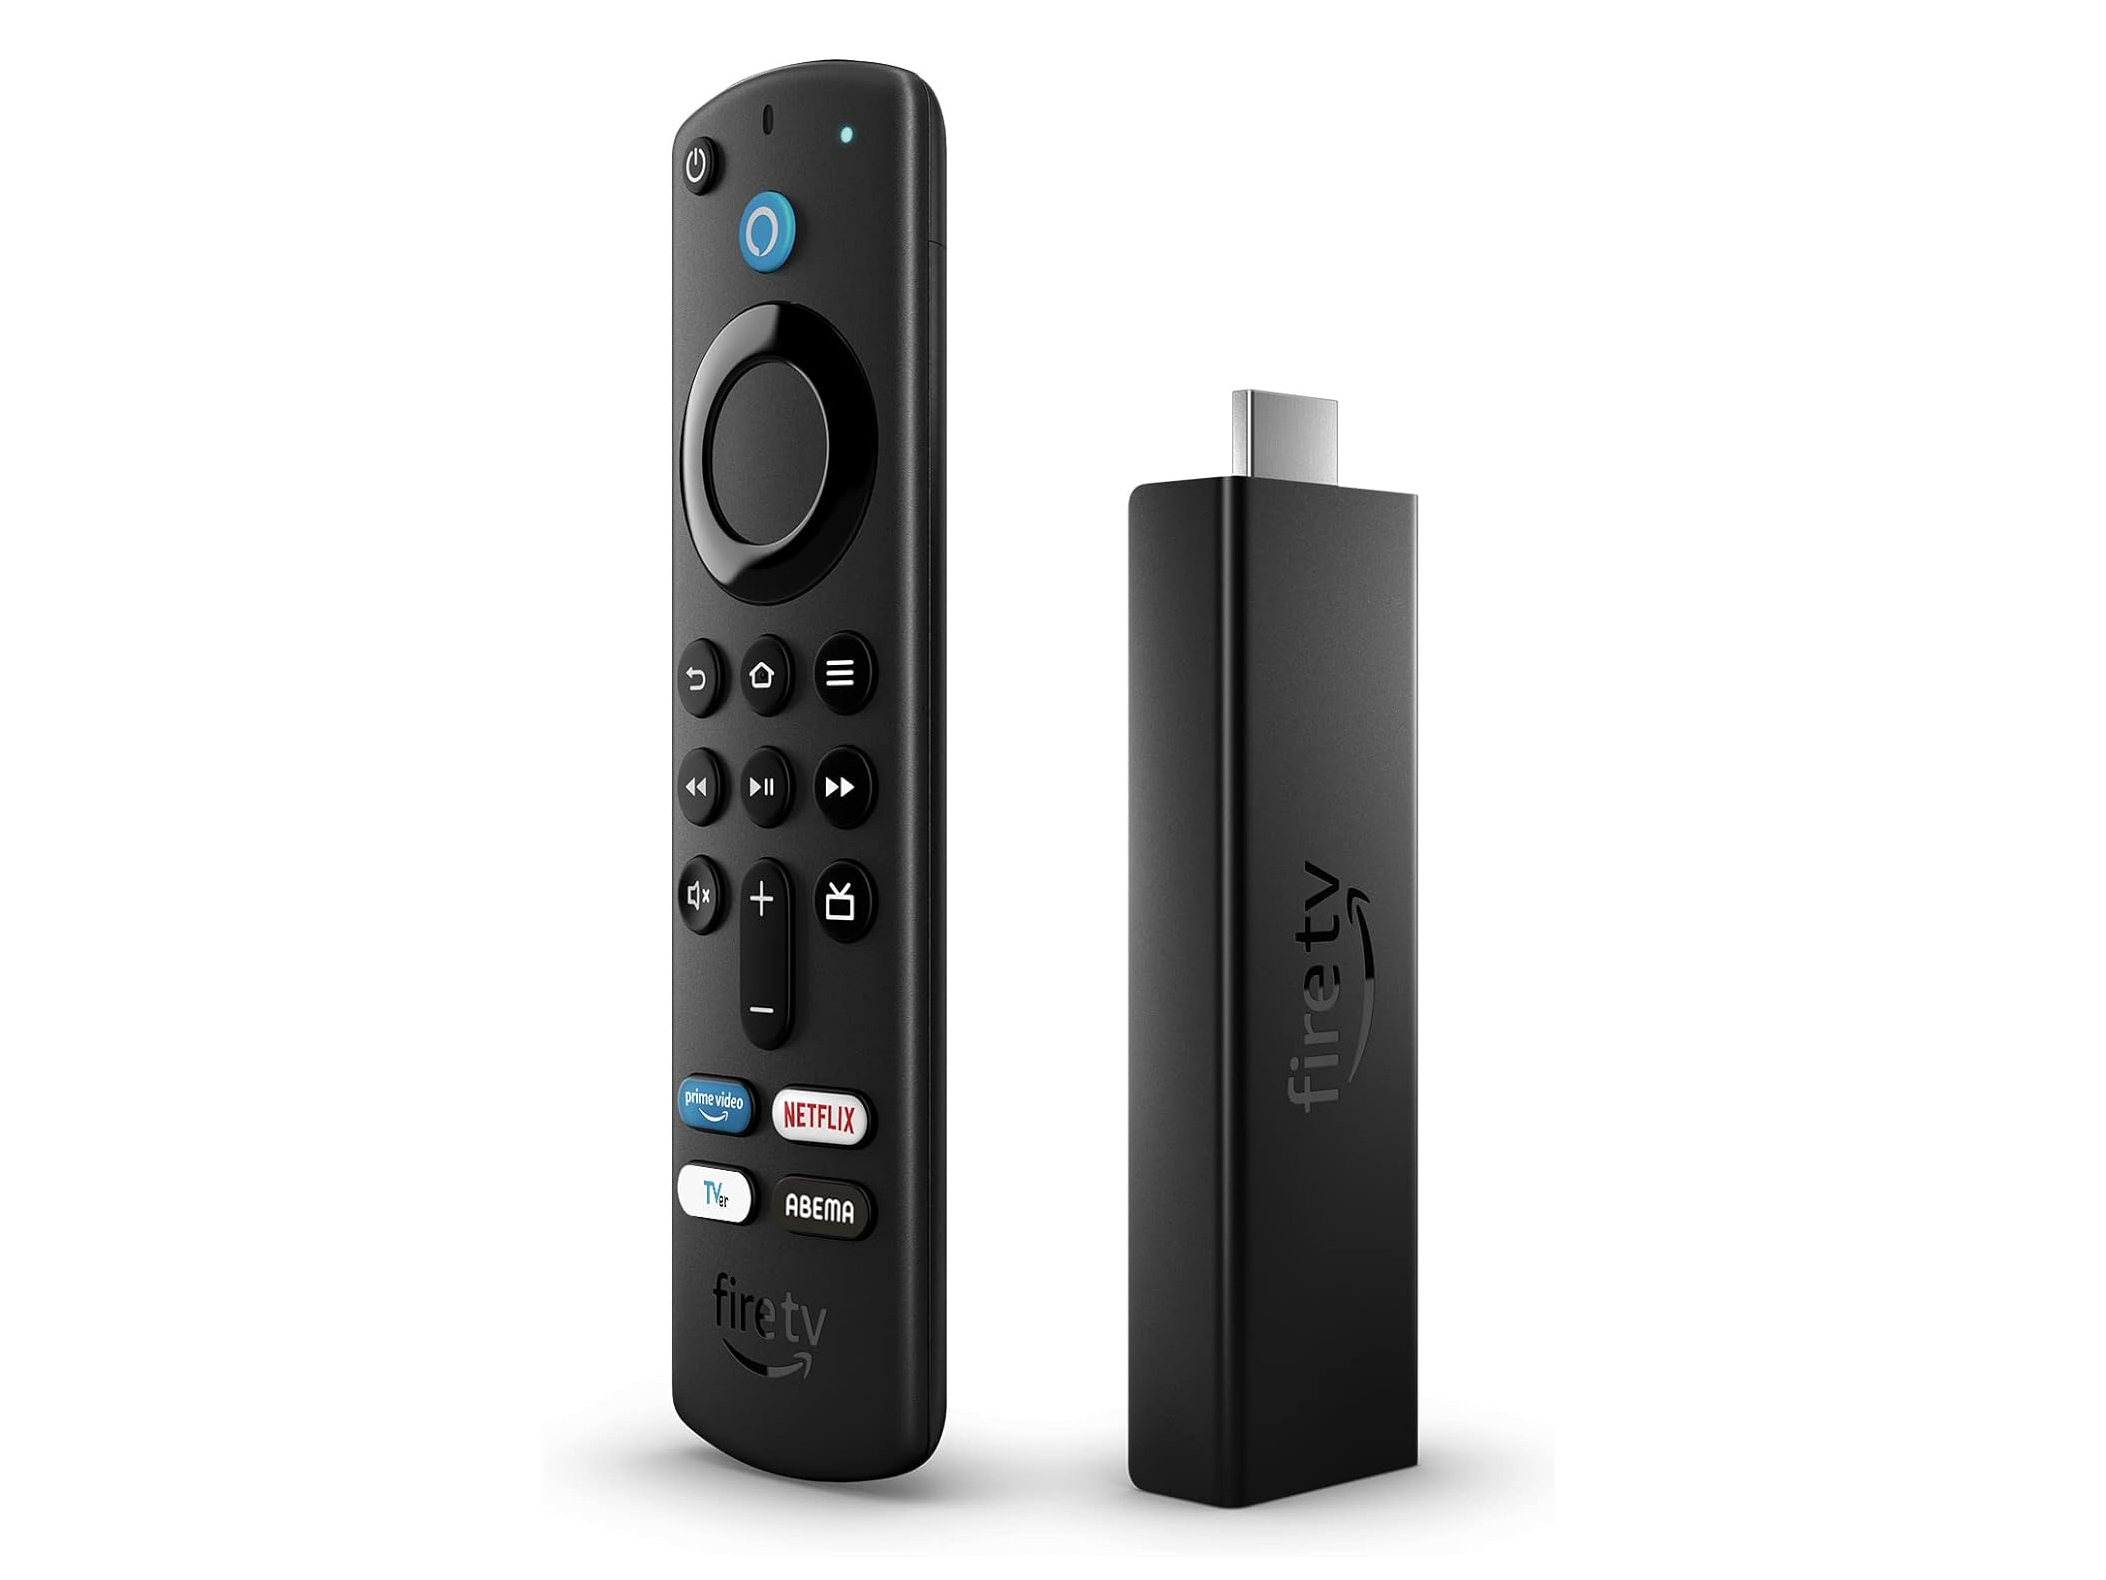 新品未開封  Amazon Fire TV Stick 4K 即日発送 保証付き